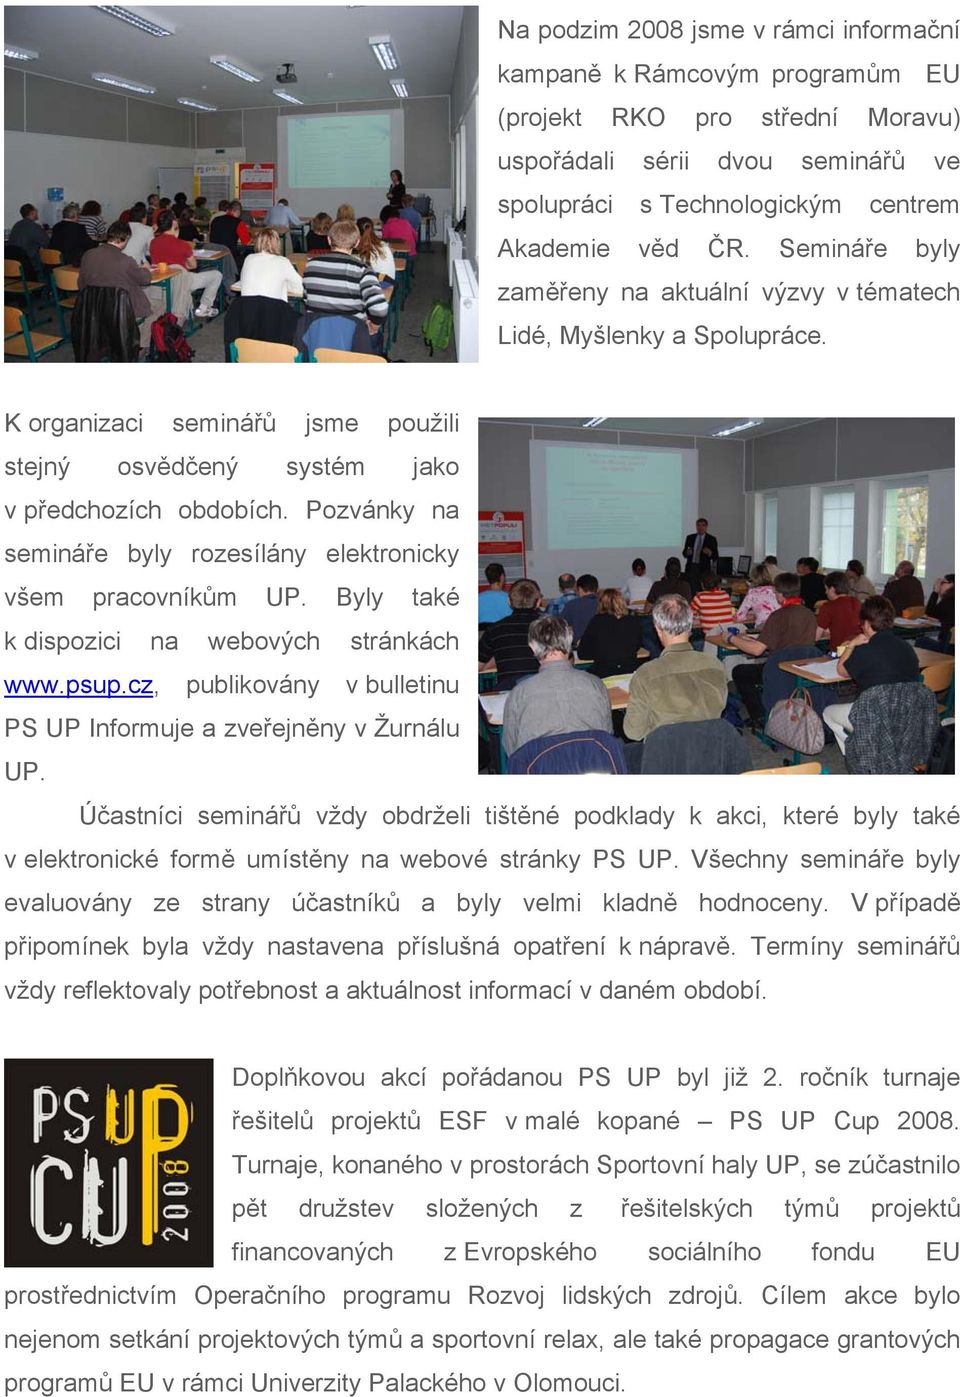 Pozvánky na semináře byly rozesílány elektronicky všem pracovníkům UP. Byly také k dispozici na webových stránkách www.psup.cz, publikovány v bulletinu PS UP Informuje a zveřejněny v Žurnálu UP.